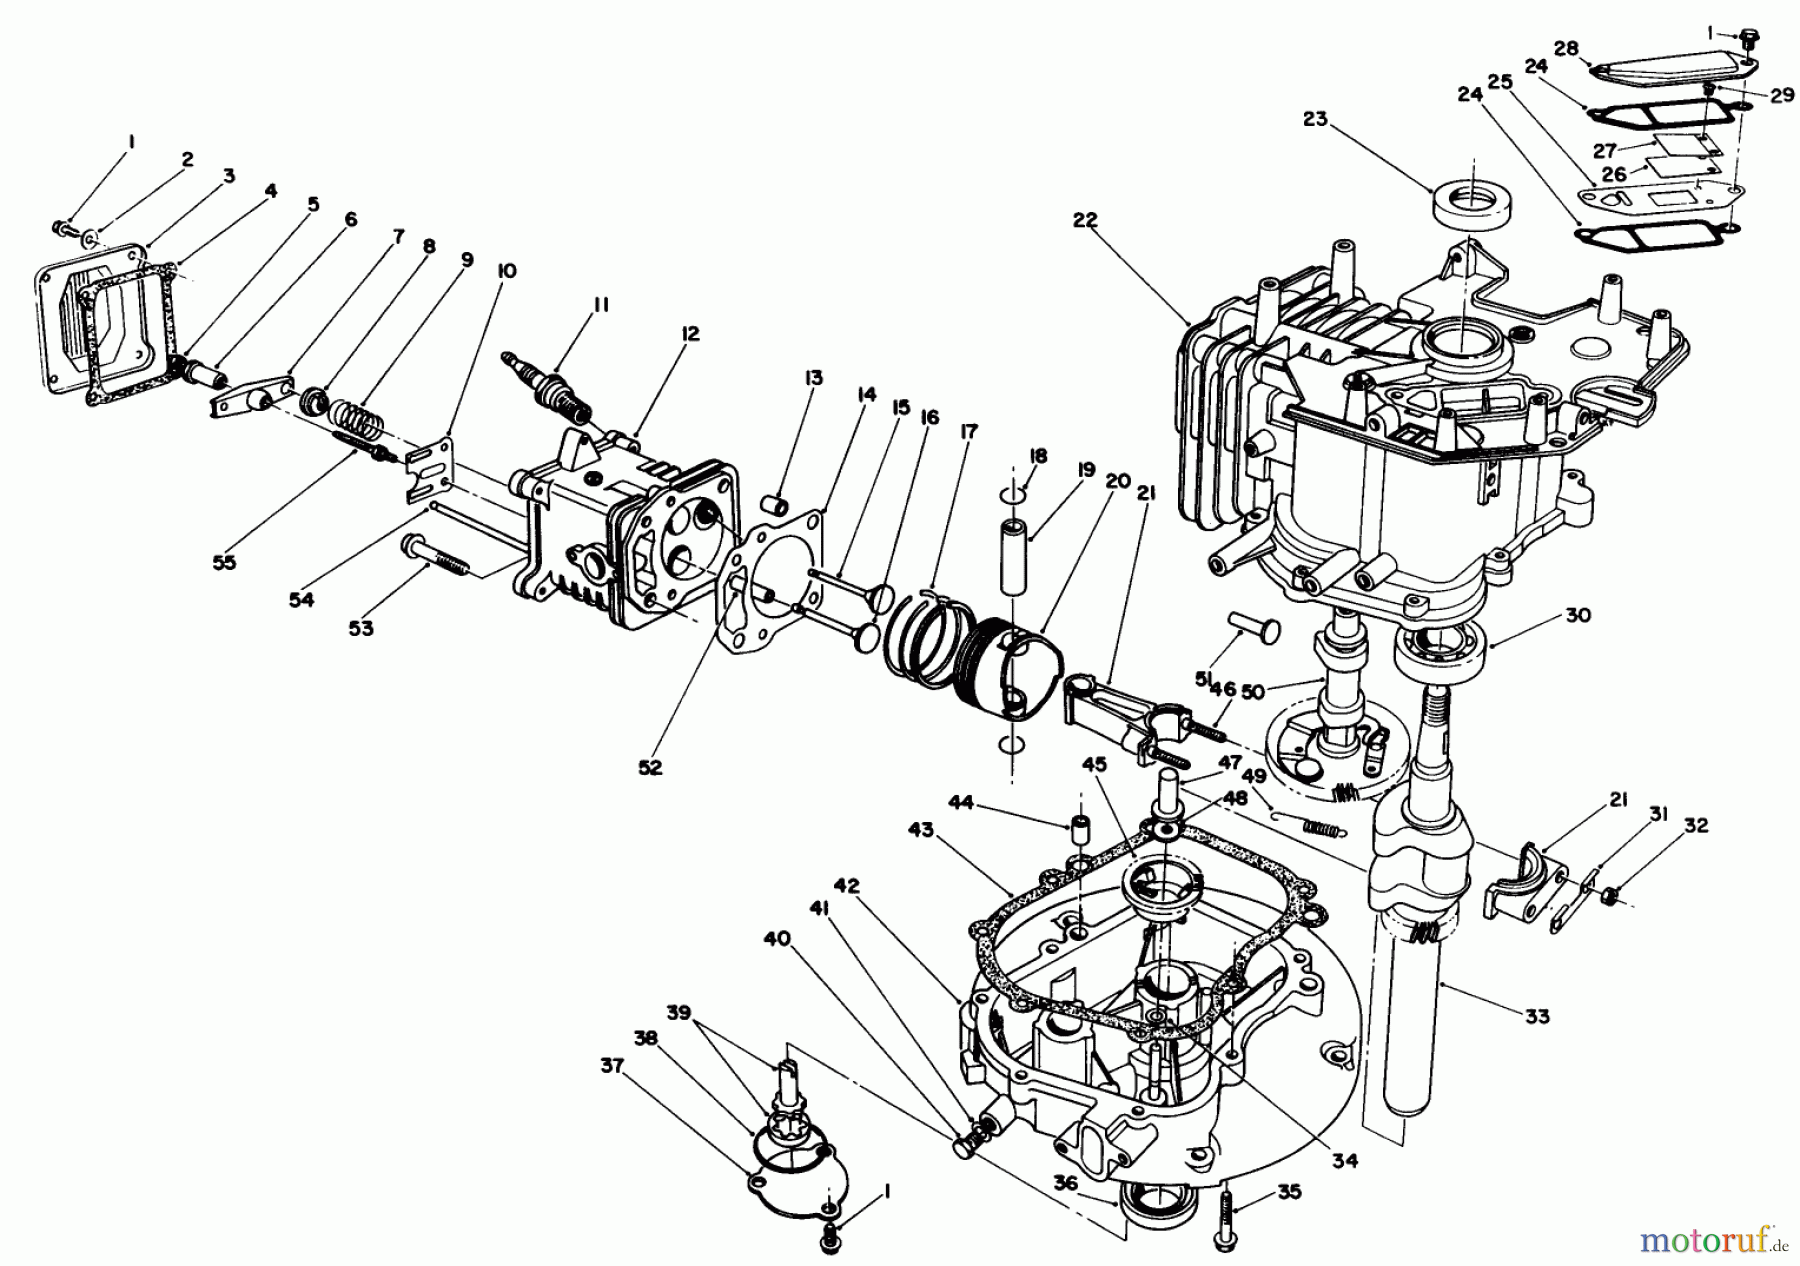  Toro Neu Mowers, Walk-Behind Seite 1 20626C - Toro Lawnmower, 1987 (7000001-7999999) ENGINE ASSEMBLY (MODEL NO. VMG6)